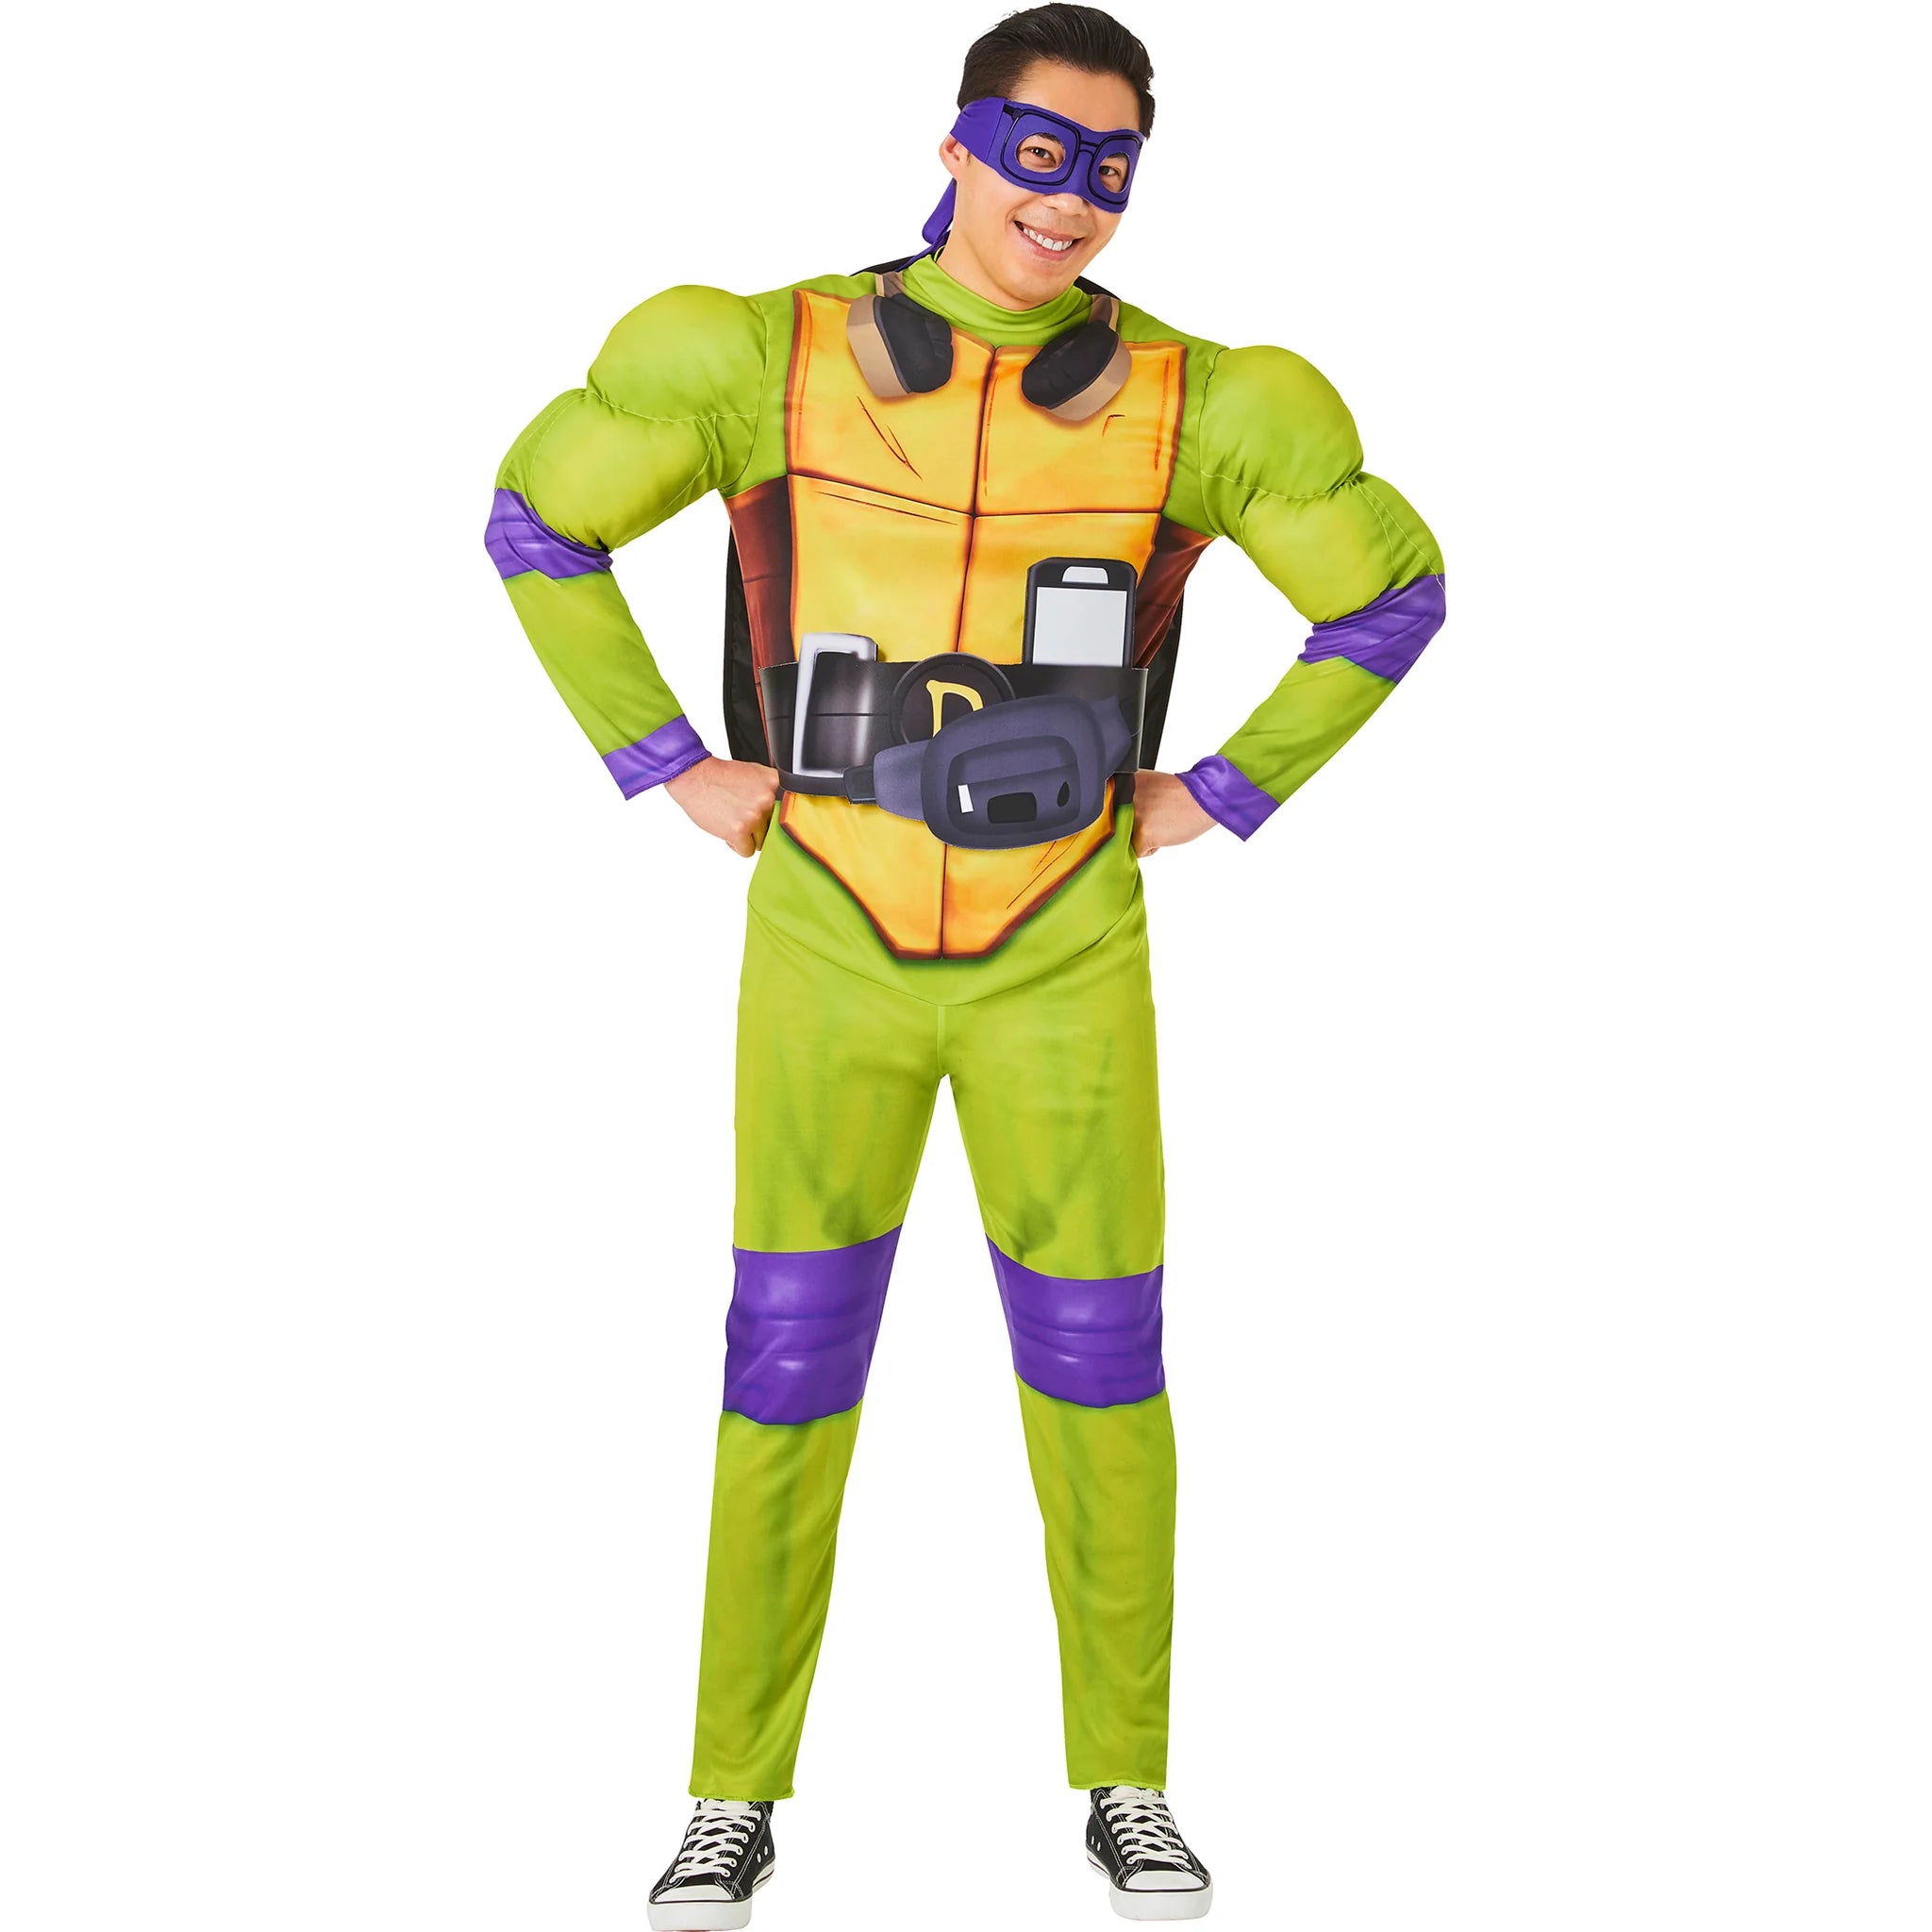 Ninja Turtles Donatello Full Head Adult Latex Costume Mask